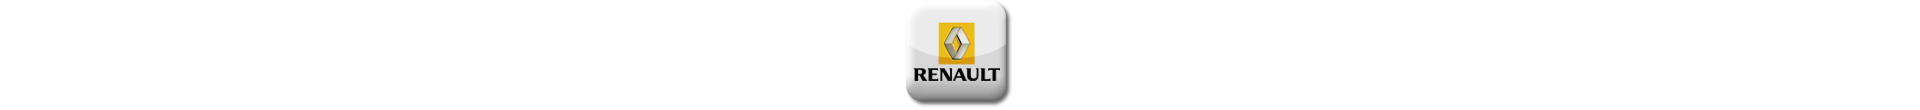 Power Box for Renault Mascott